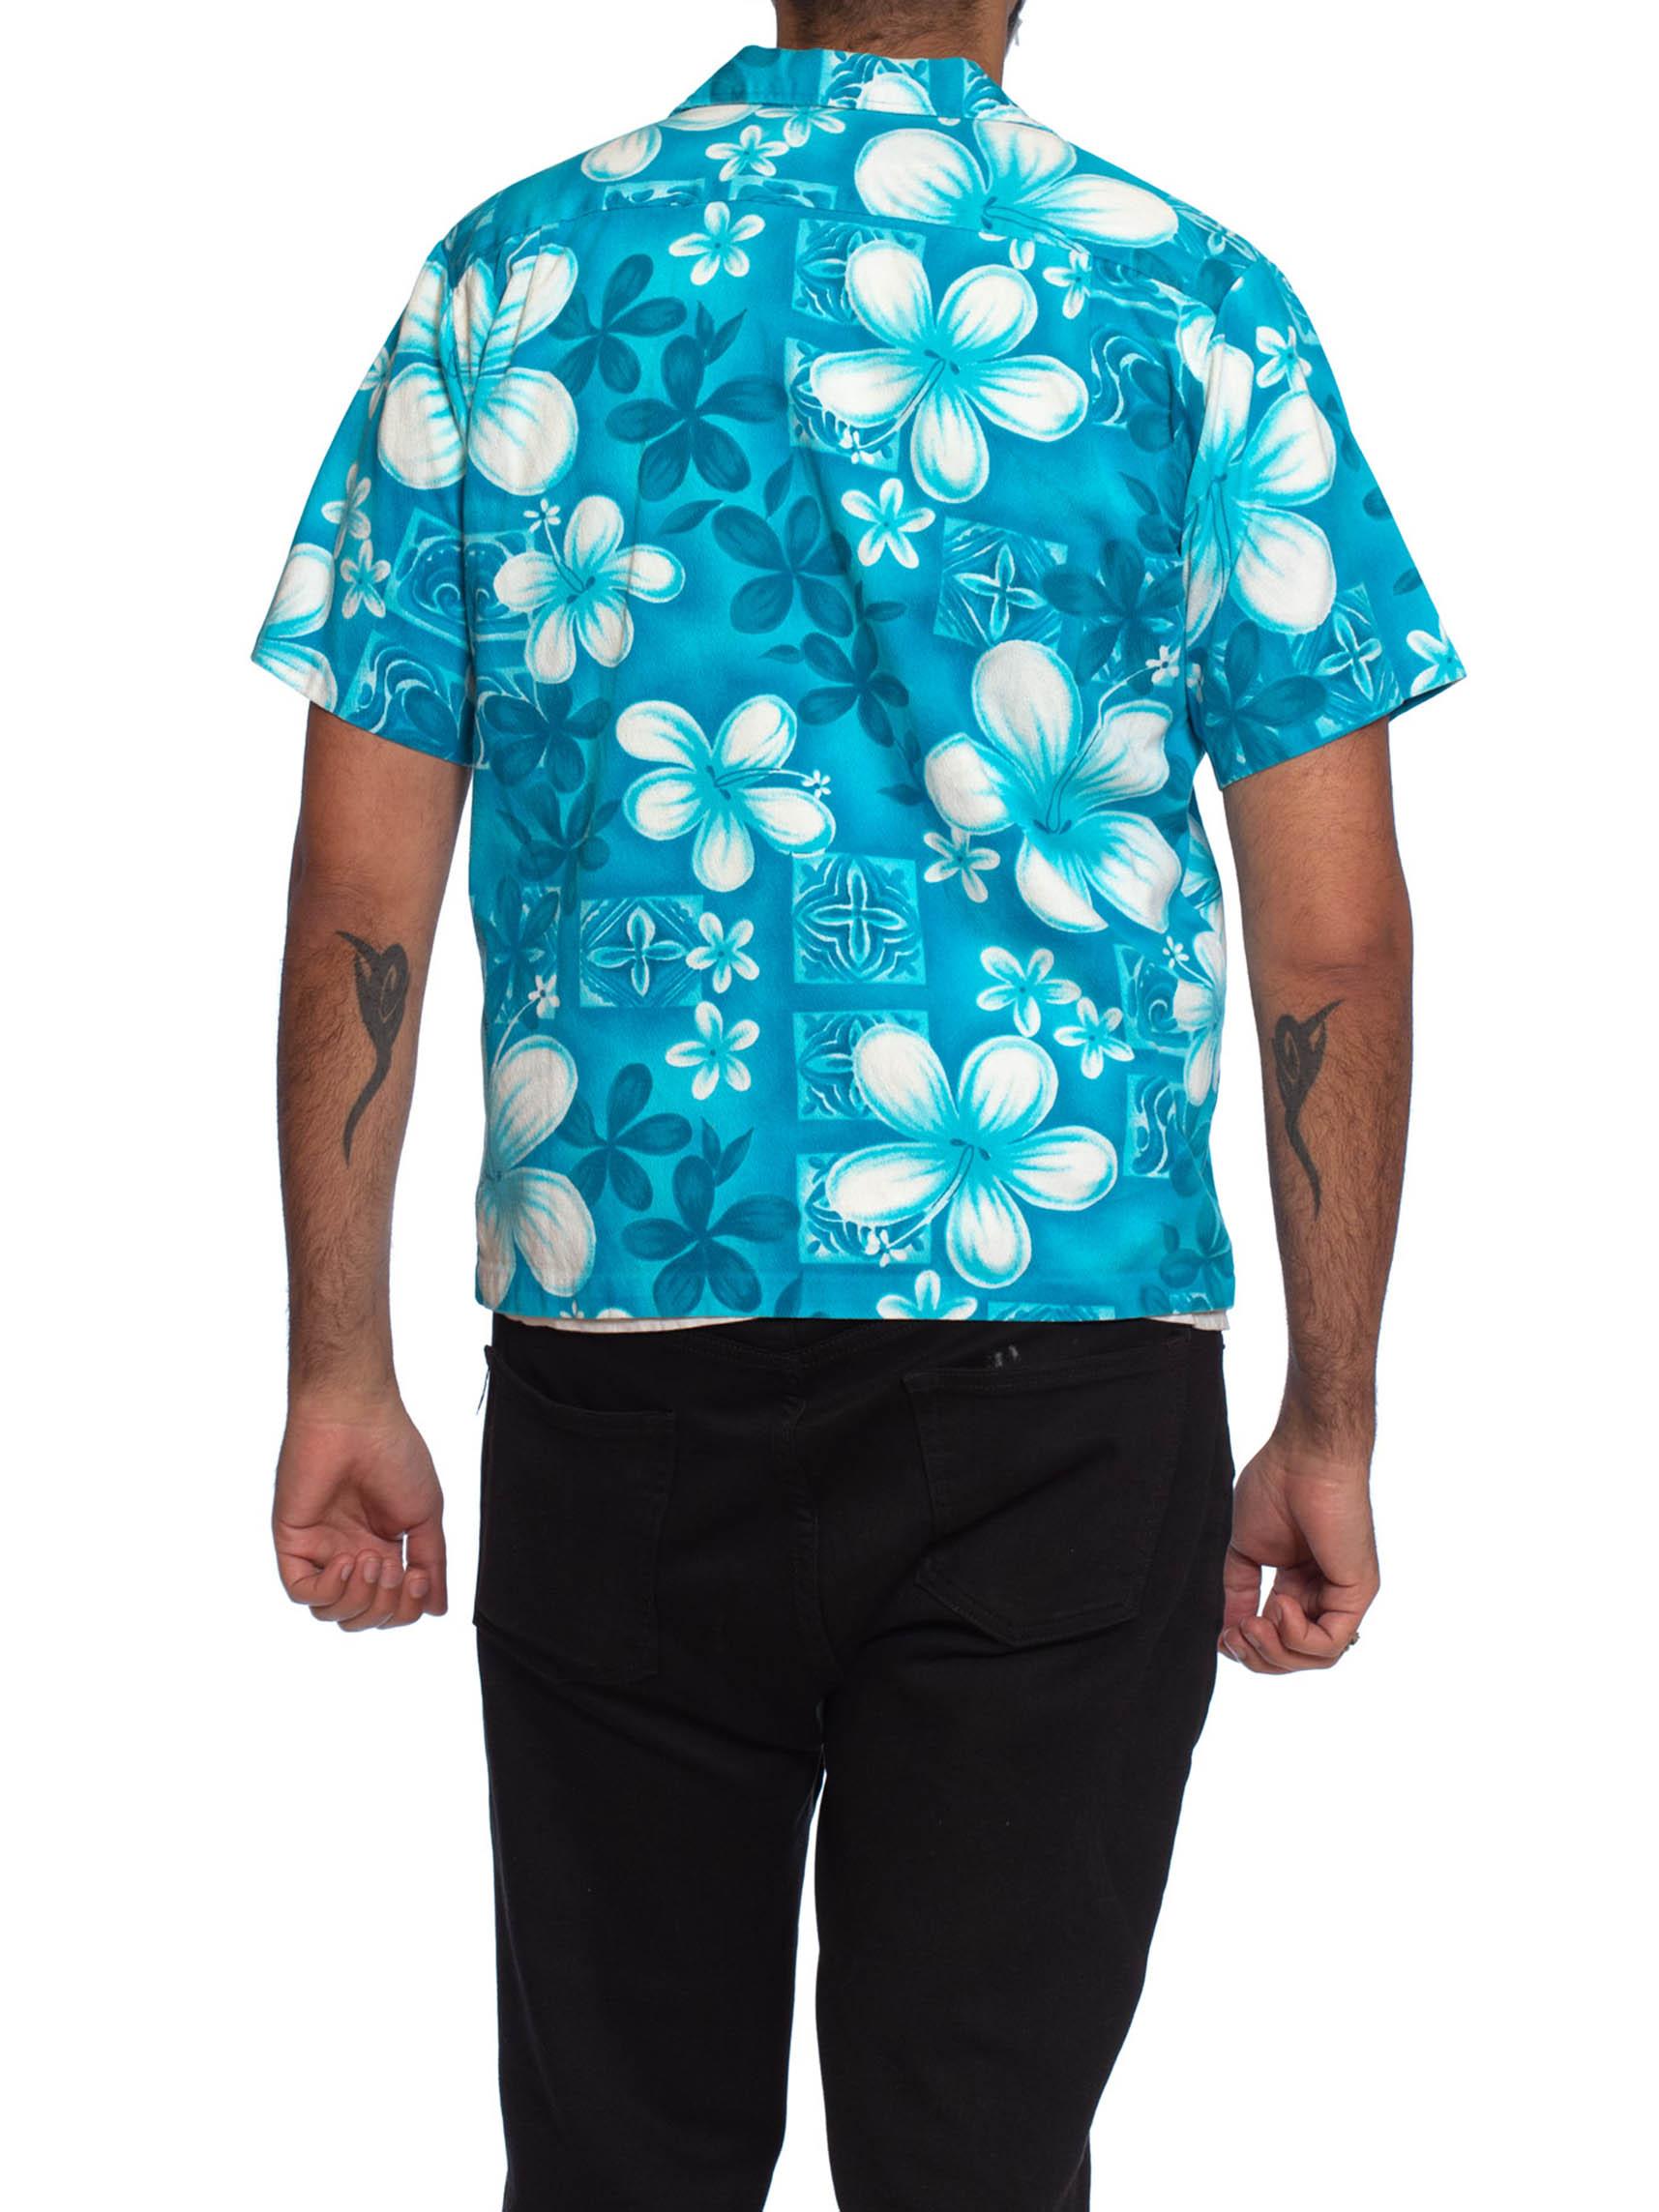 teal hawaiian shirt